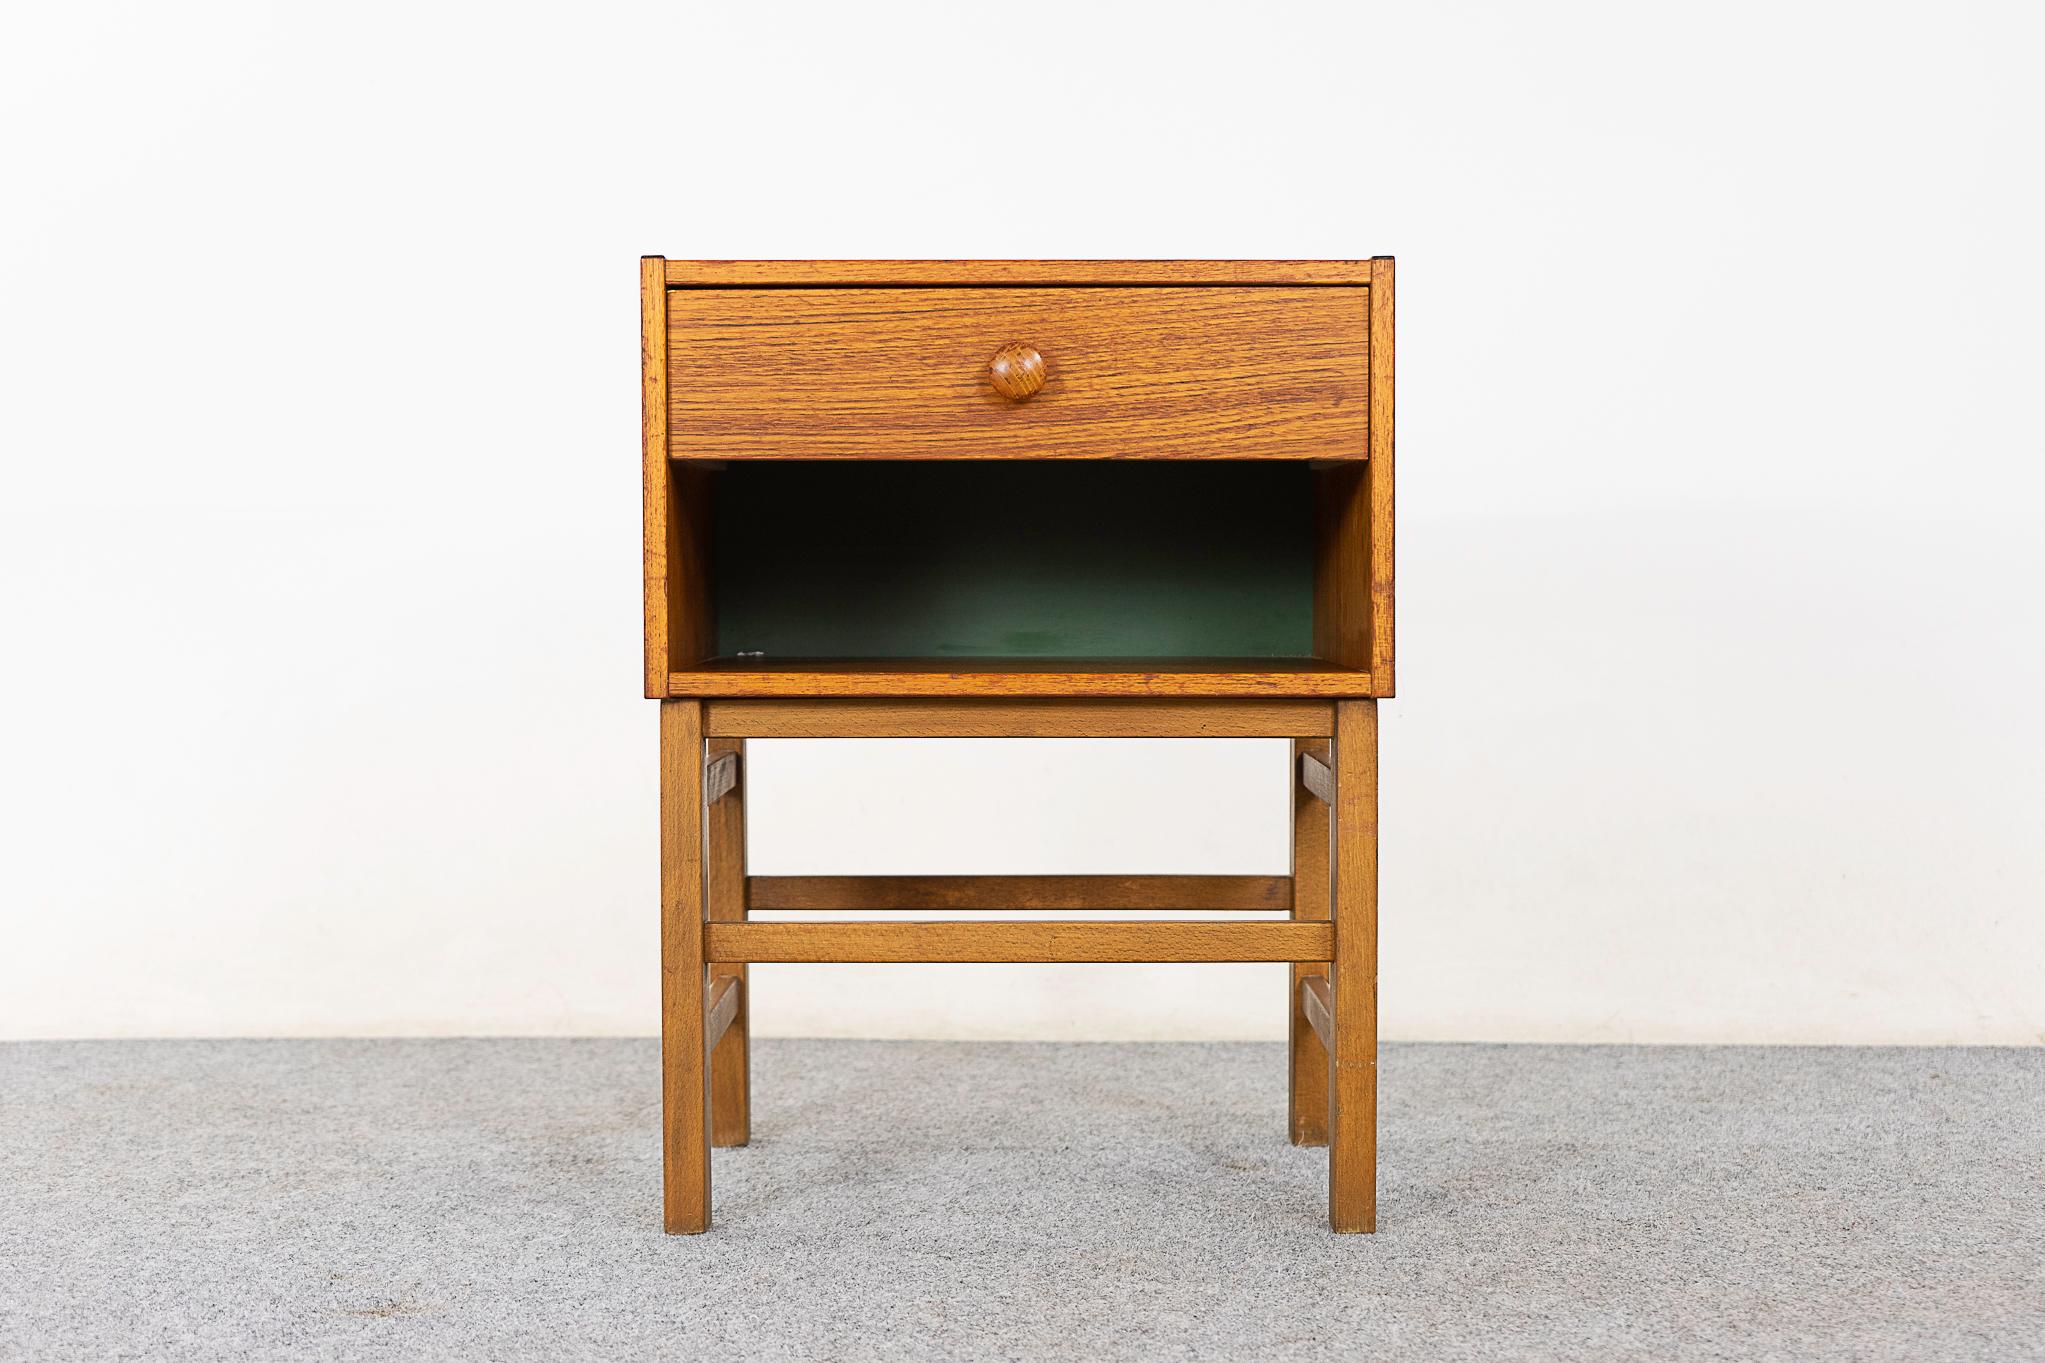 Dänischer Nachttisch aus Teak und Buche, ca. 1960er Jahre. Kompakter Tisch mit einer Schublade und offenem Fach. Das furnierte Gehäuse ruht auf einem stabilen Sockel mit Querstreben. 

Bitte erkundigen Sie sich nach den Tarifen für Fern- und